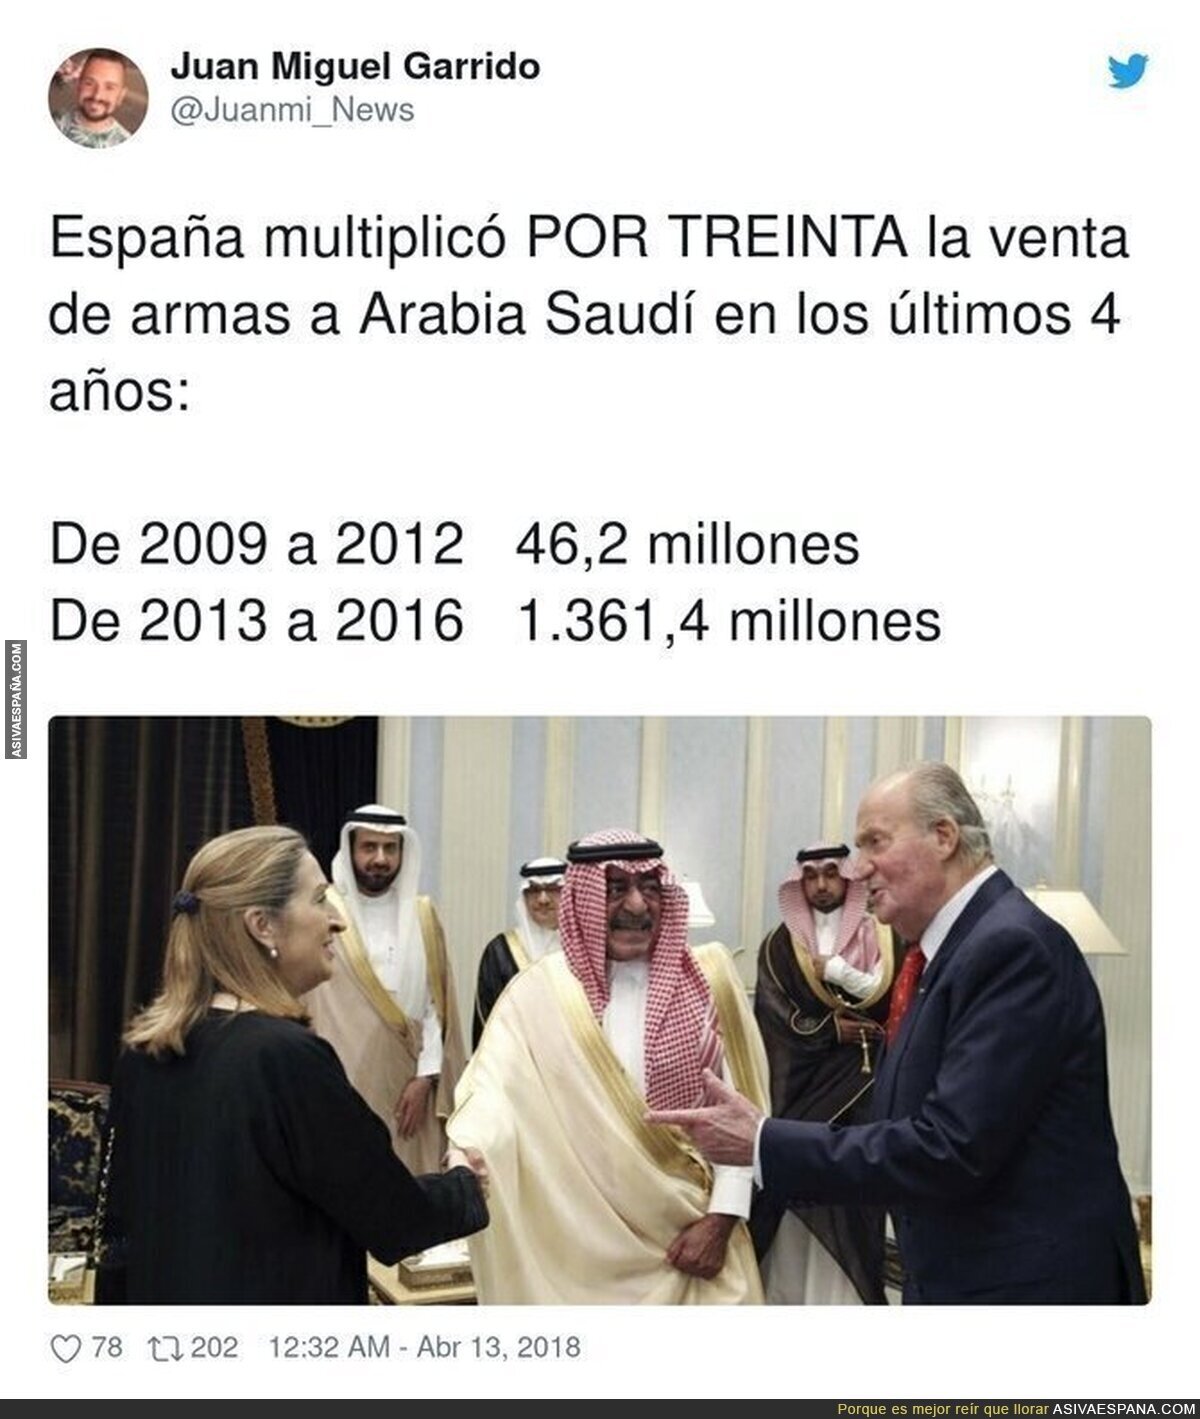 El gran negocio de armas en España a costa de Arabia Saudí